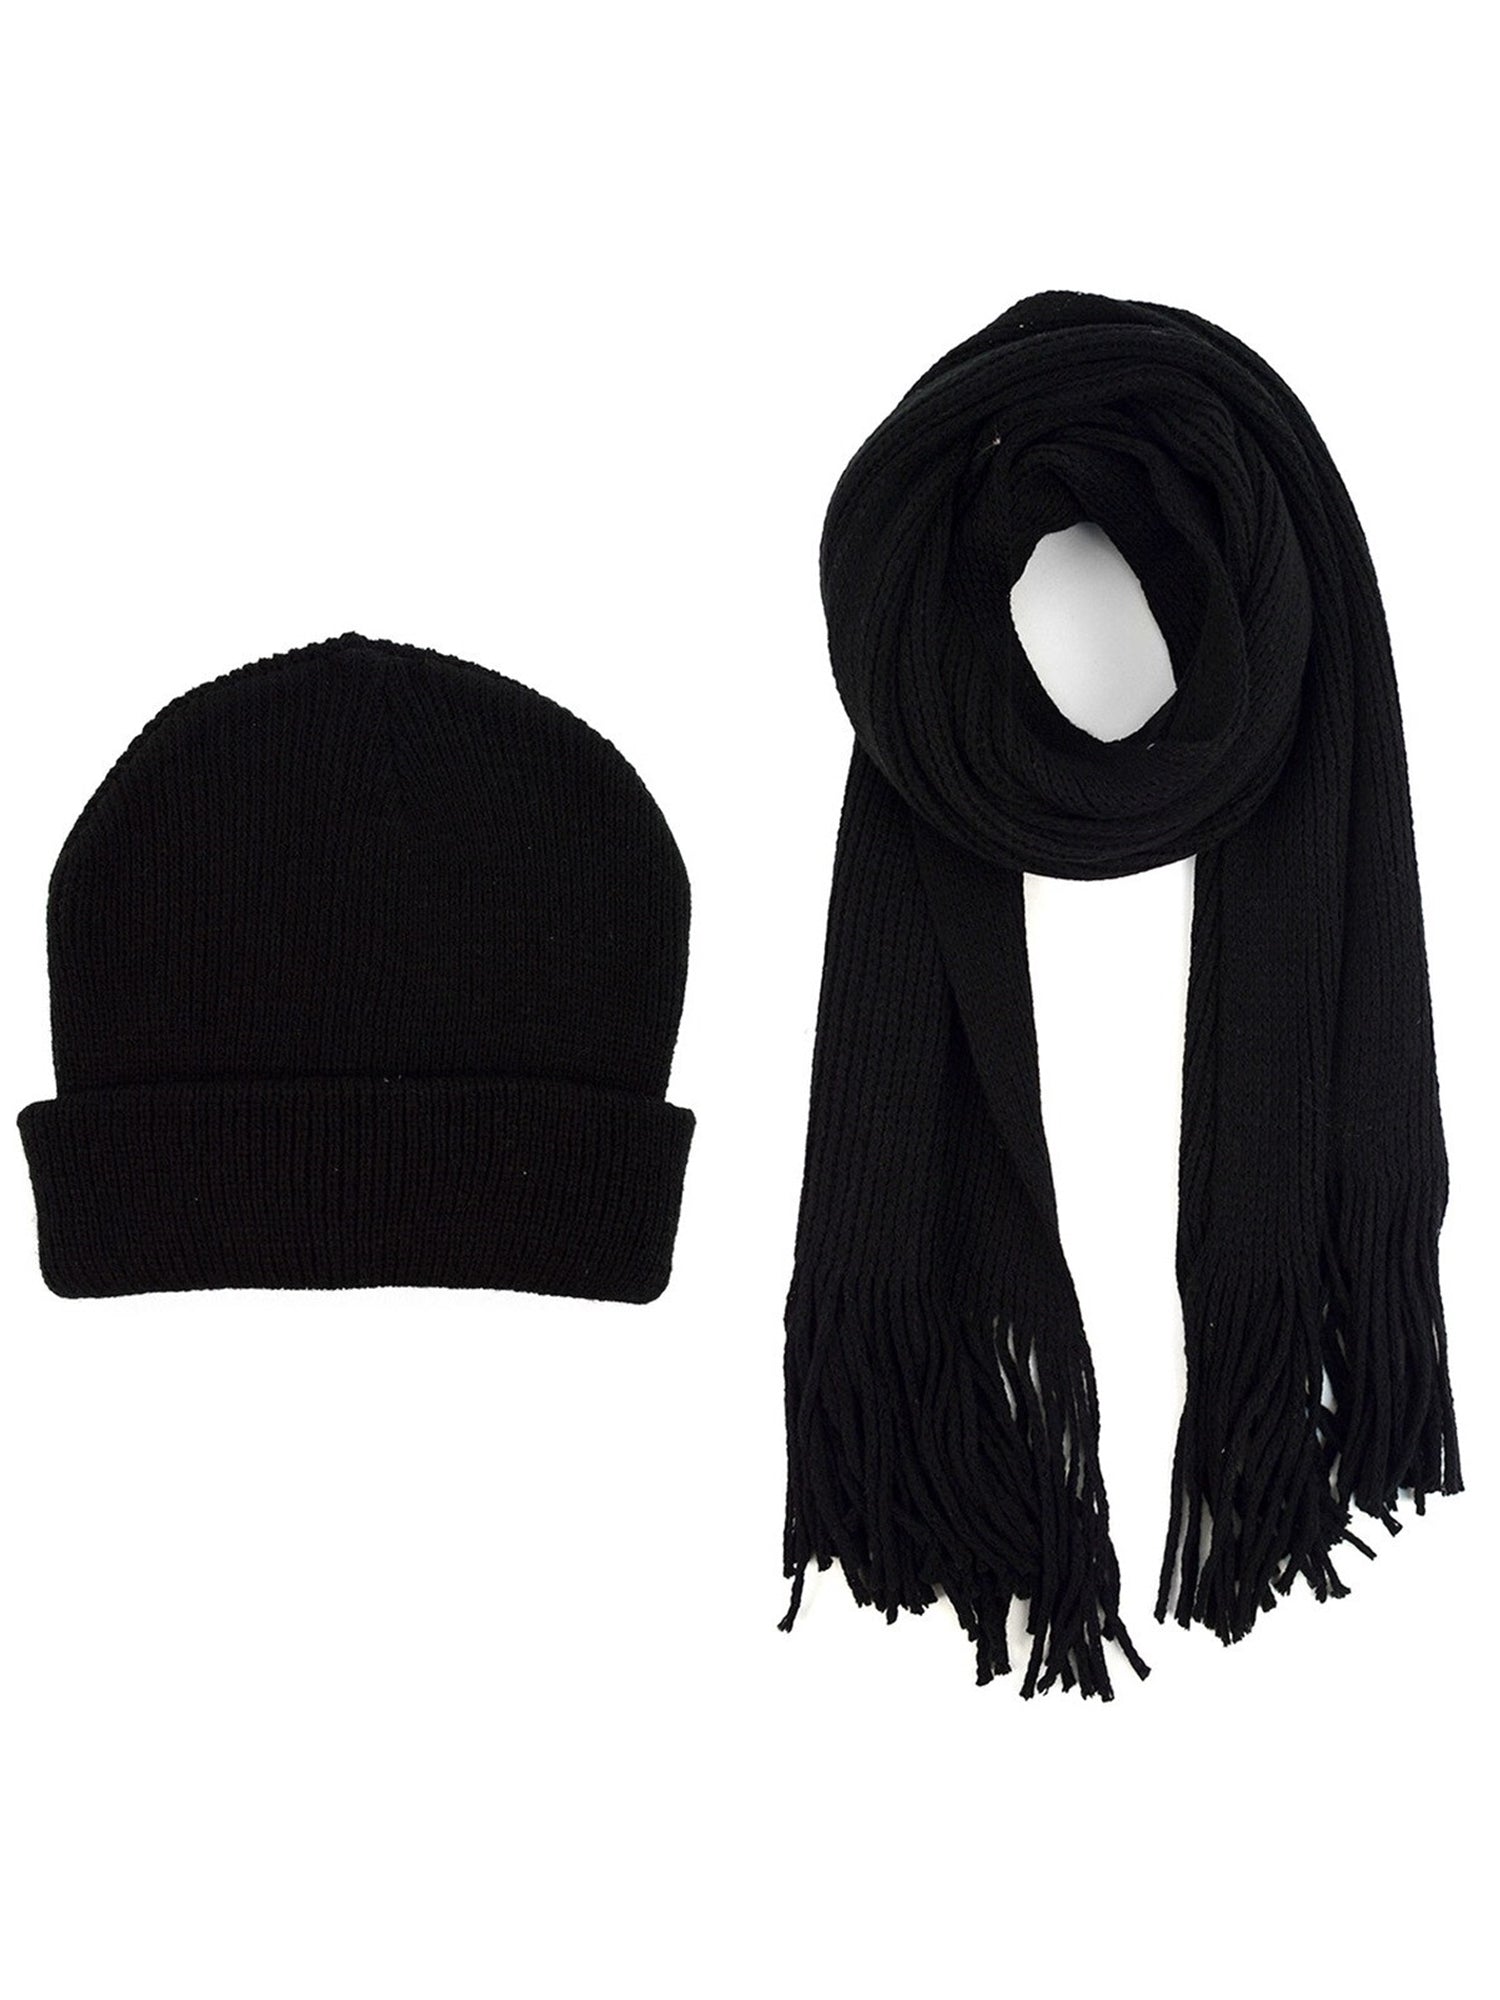 Men's Acrylic Knit Scarf and Hat Set Winter Set Umo Lorenzo Black One Size 